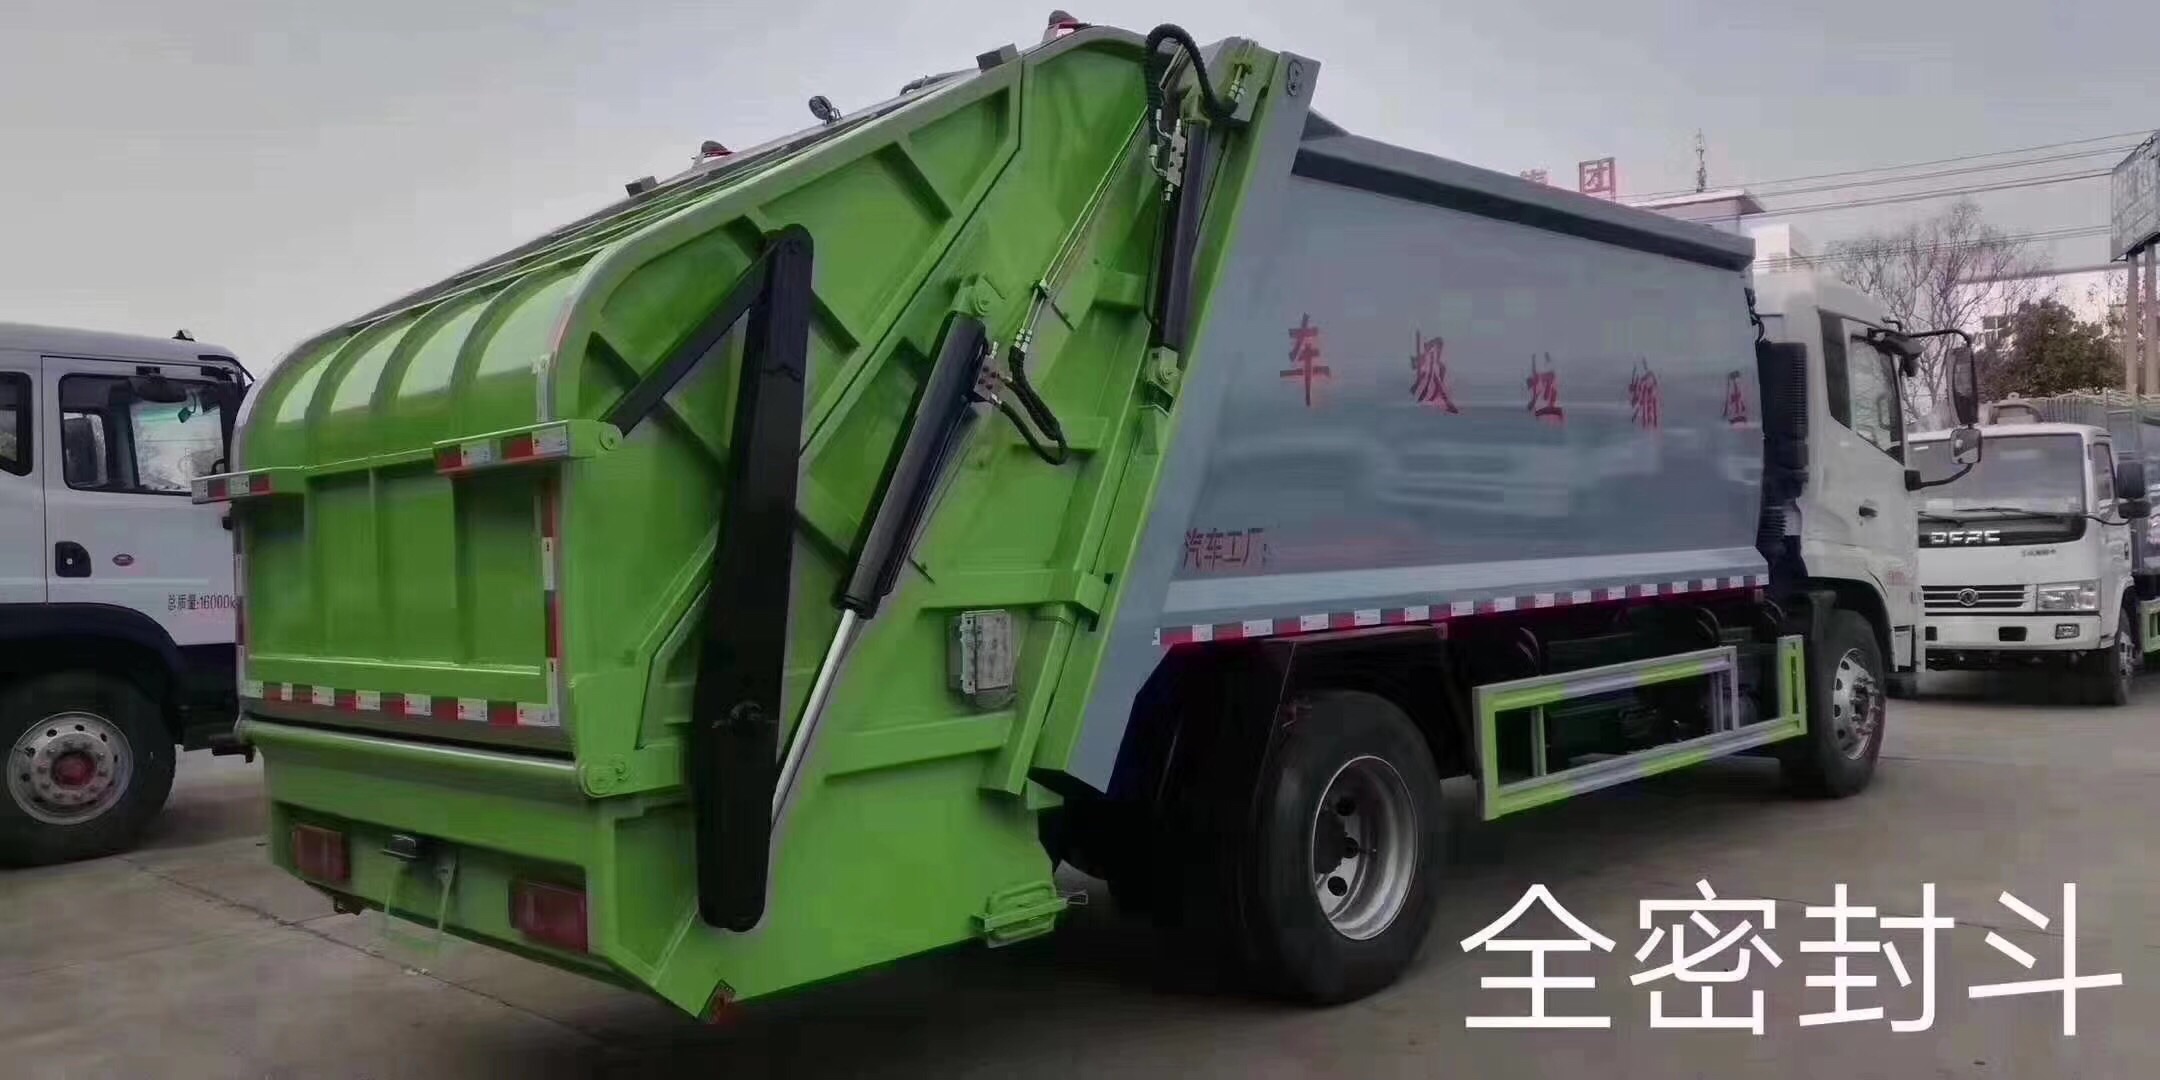 南京垃圾压缩车哪里买 垃圾车生产厂家 包上户可做分期图片